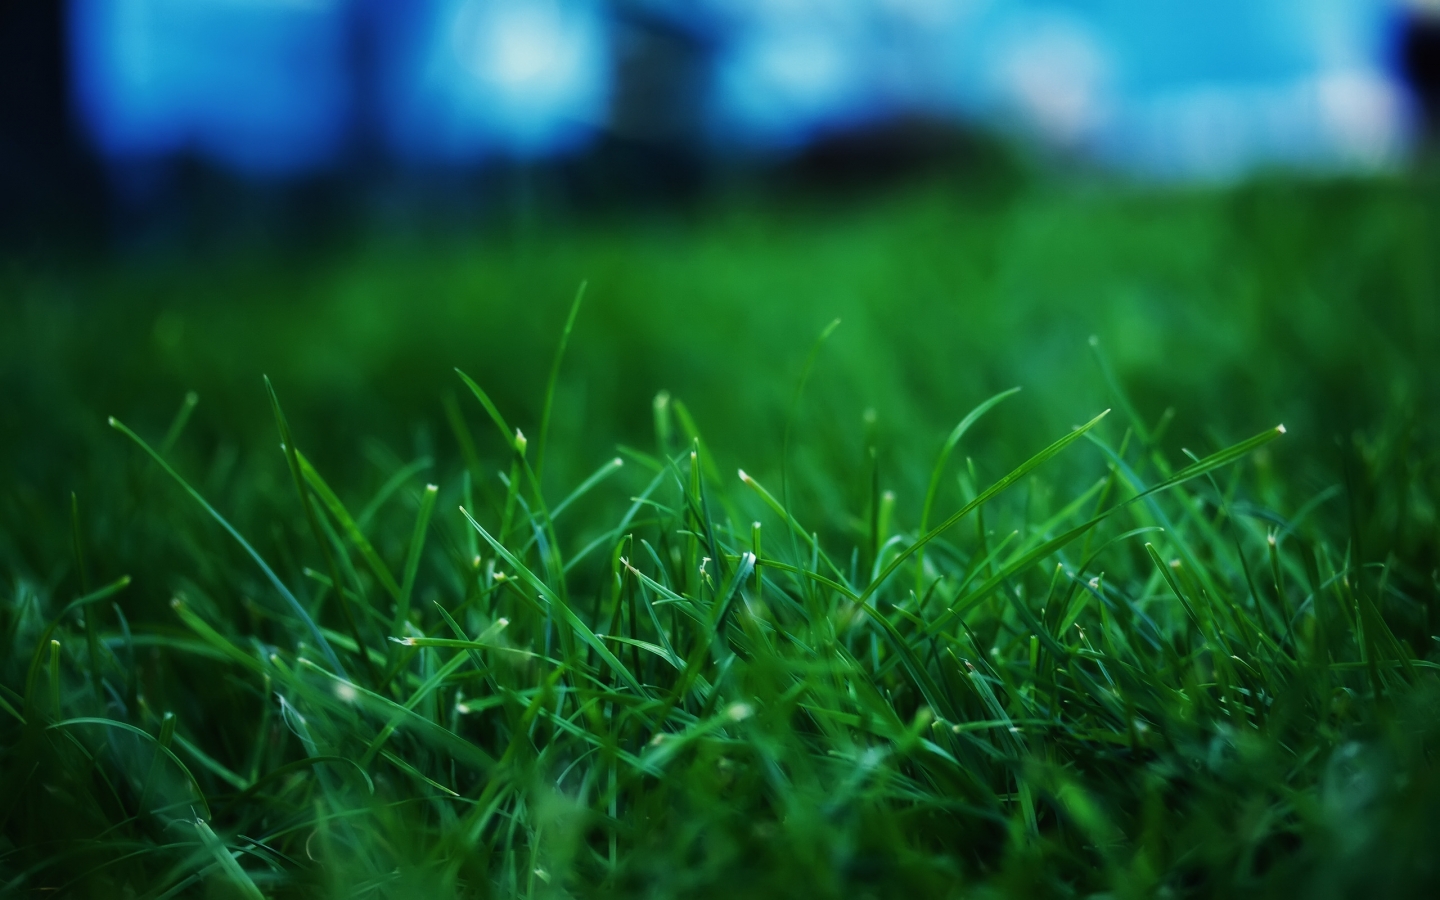 Fresh Grass for 1440 x 900 widescreen resolution